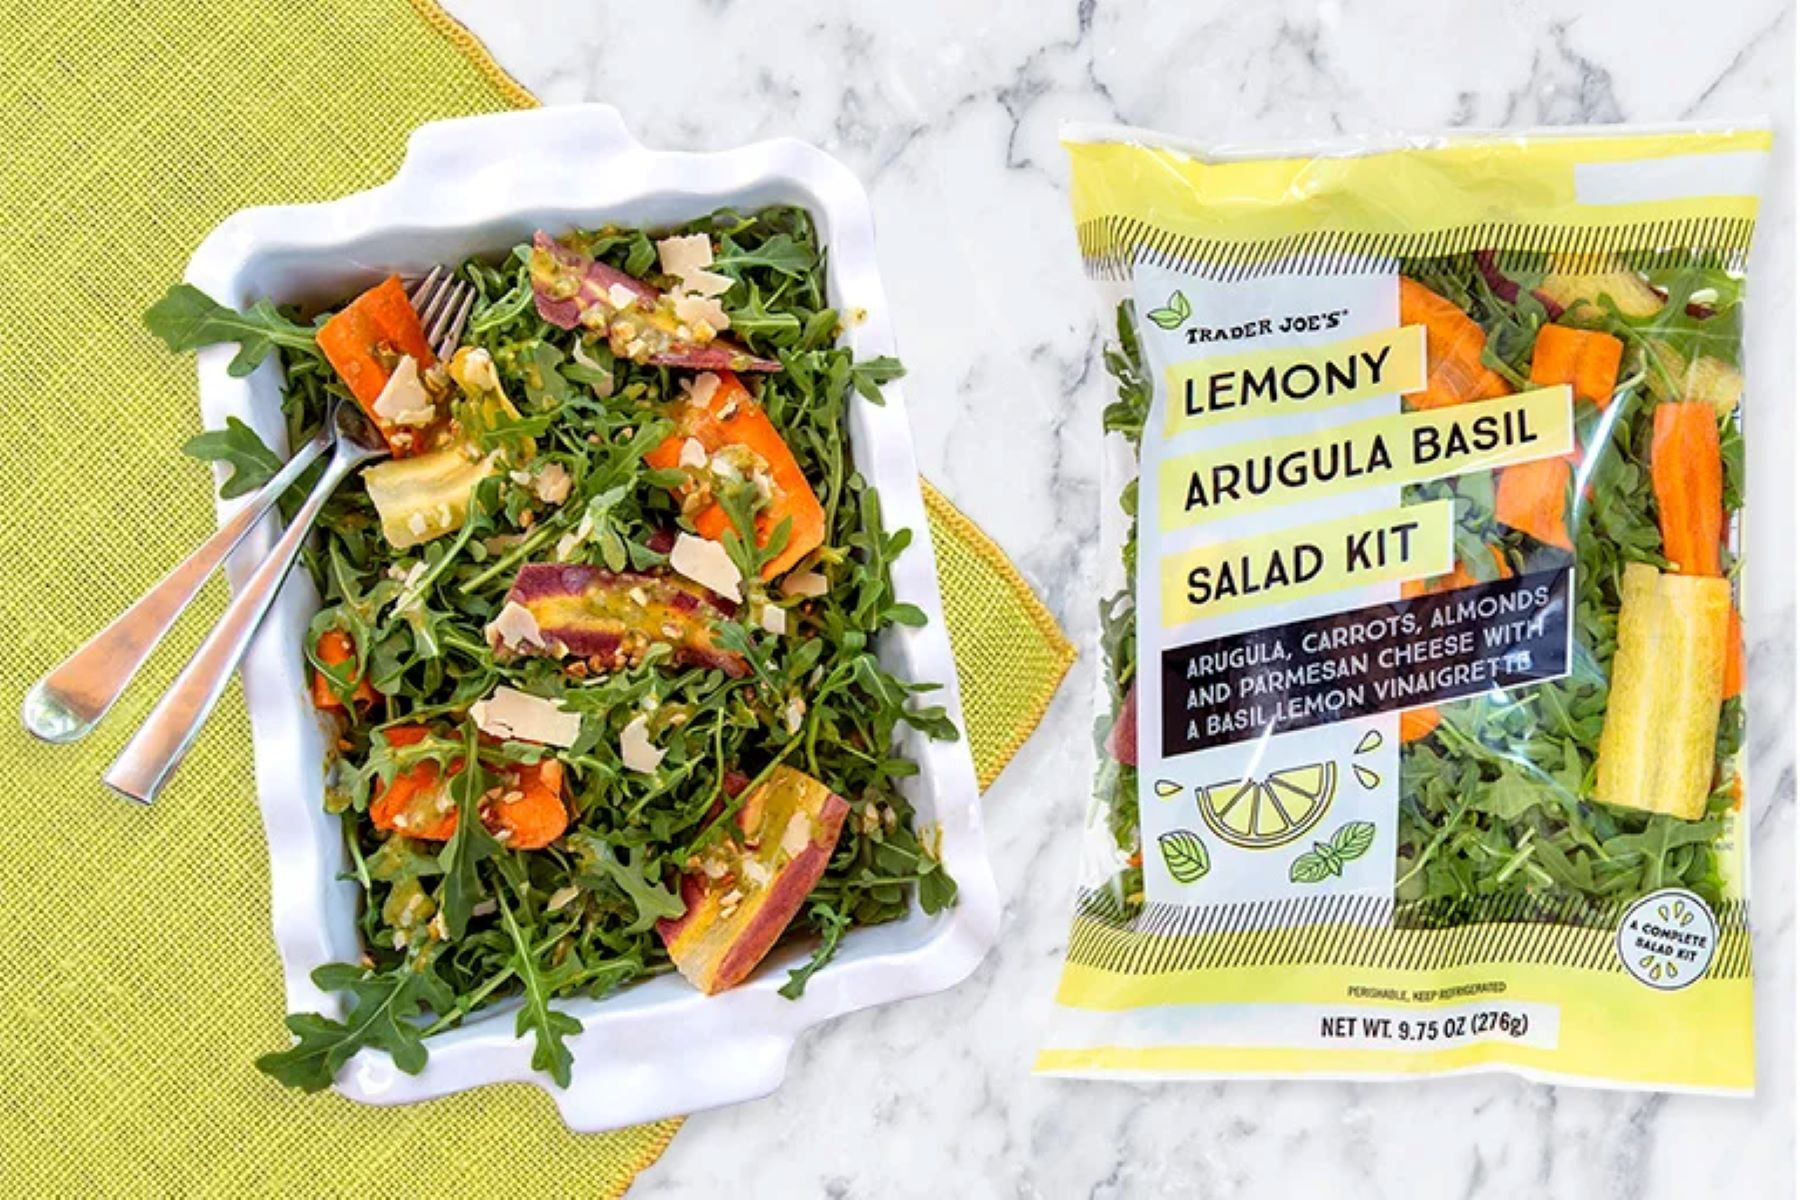 trader joes salad: Lemony Arugula Basil Salad Kit